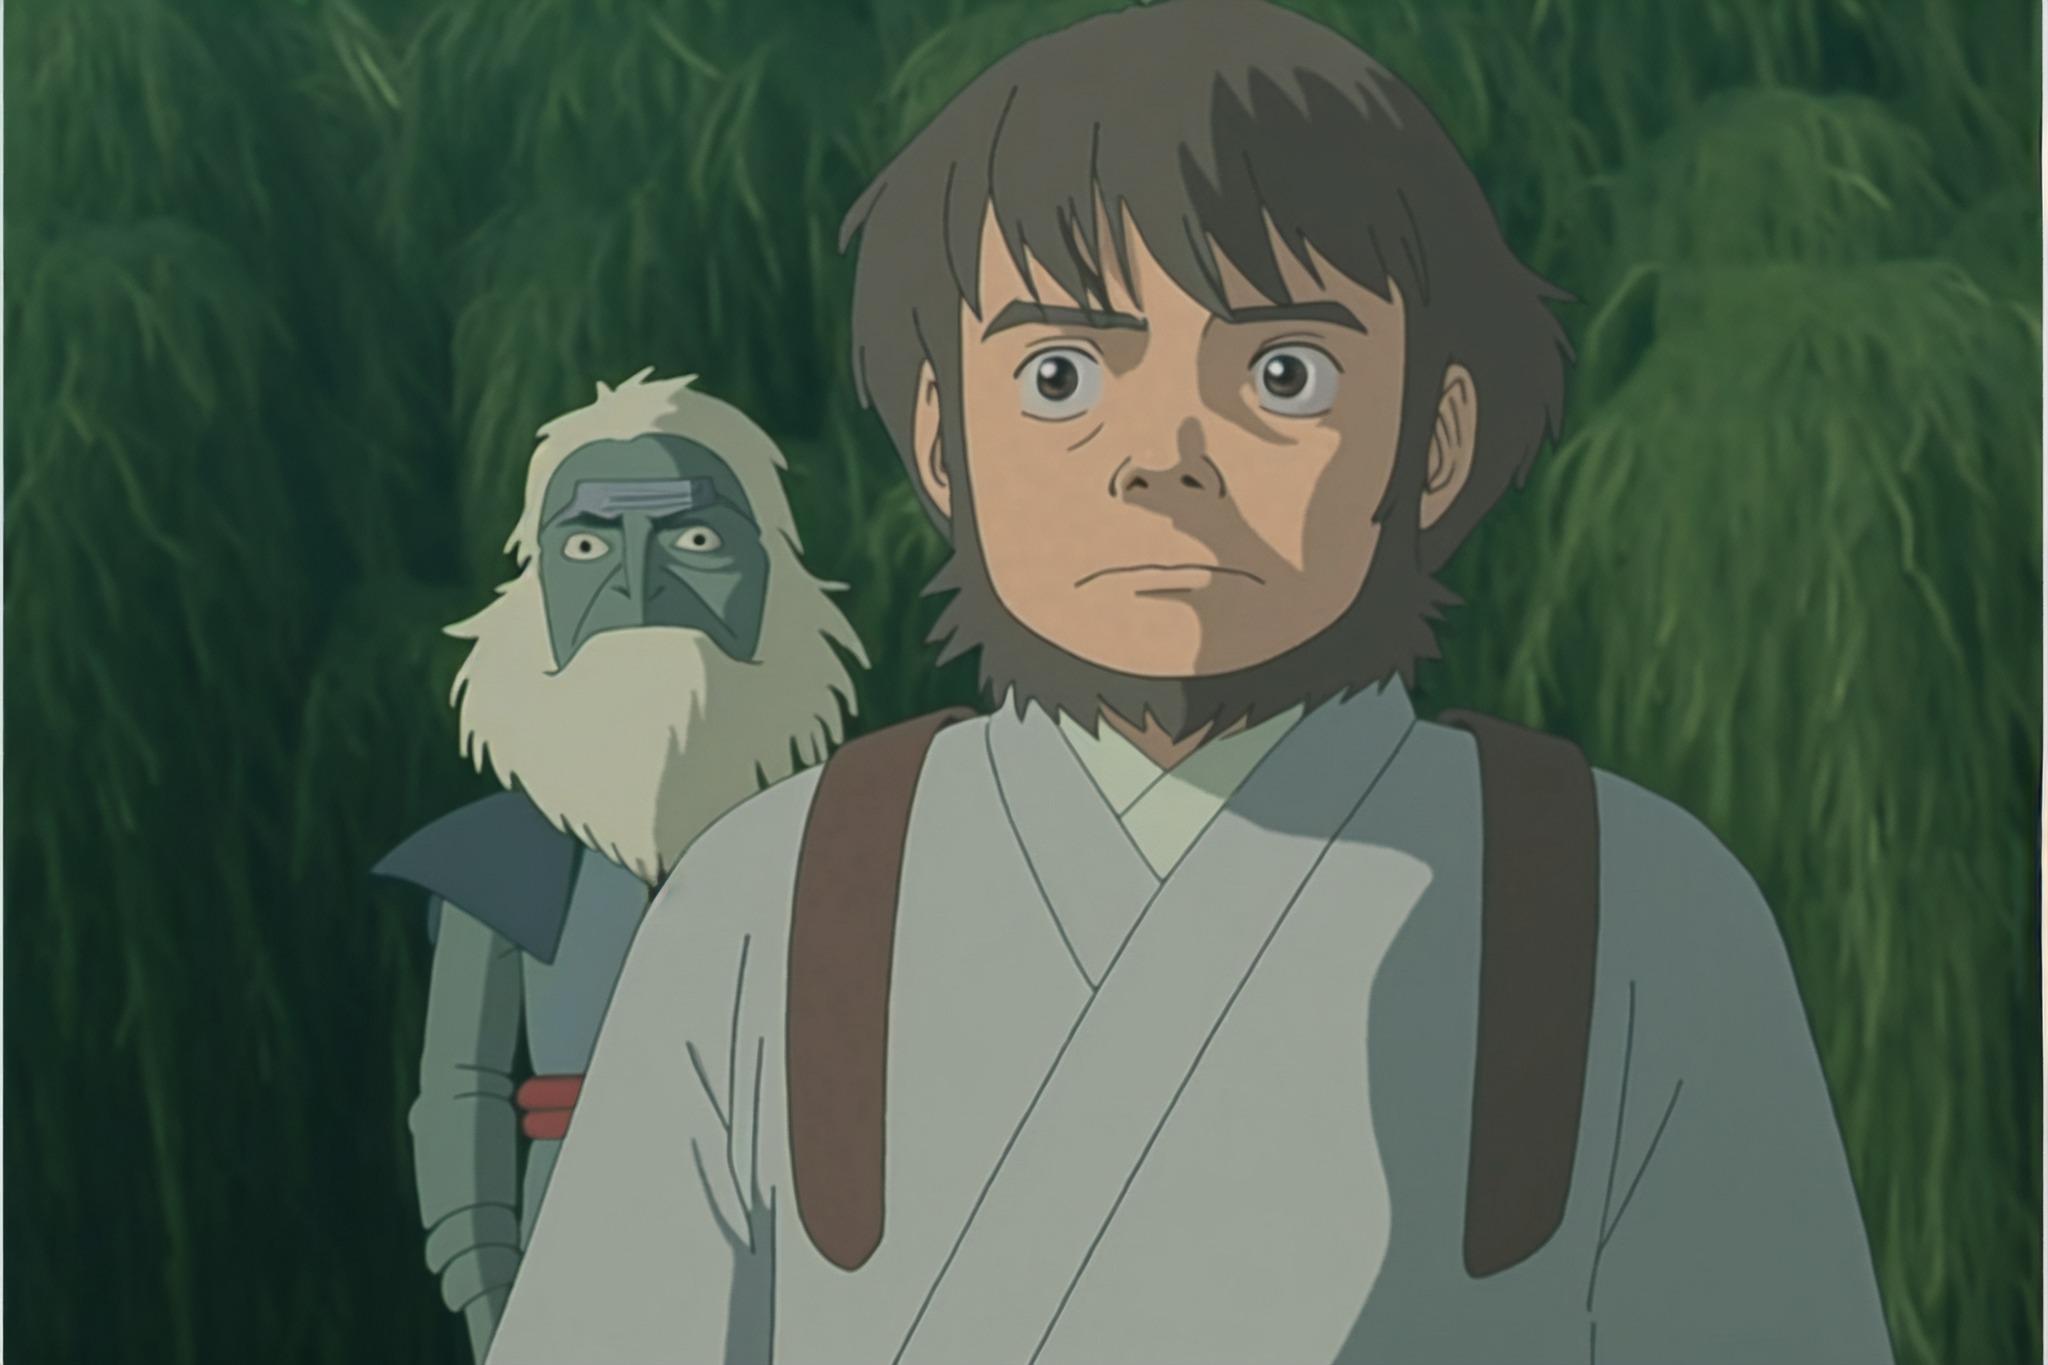 Le réseau neuronal Nijijourney représente les personnages emblématiques de Star Wars dans le style du Studio Ghibli-6